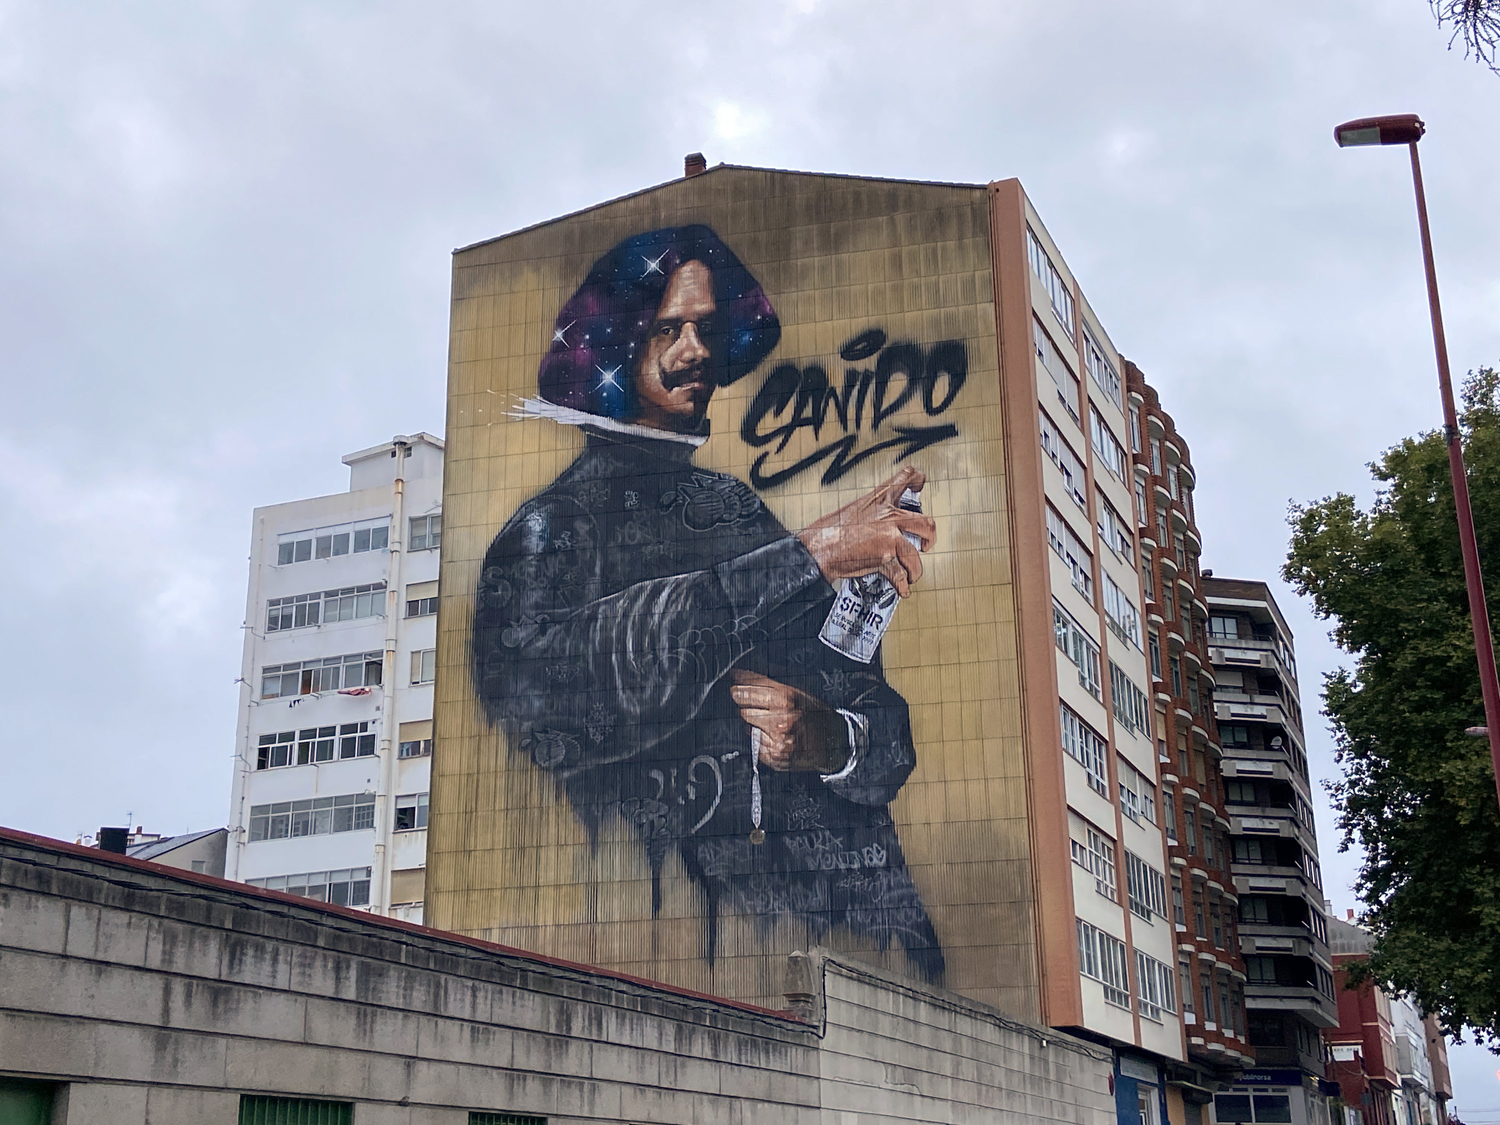 arte urbano, Sfhir, Meninas de Canido, Galicia